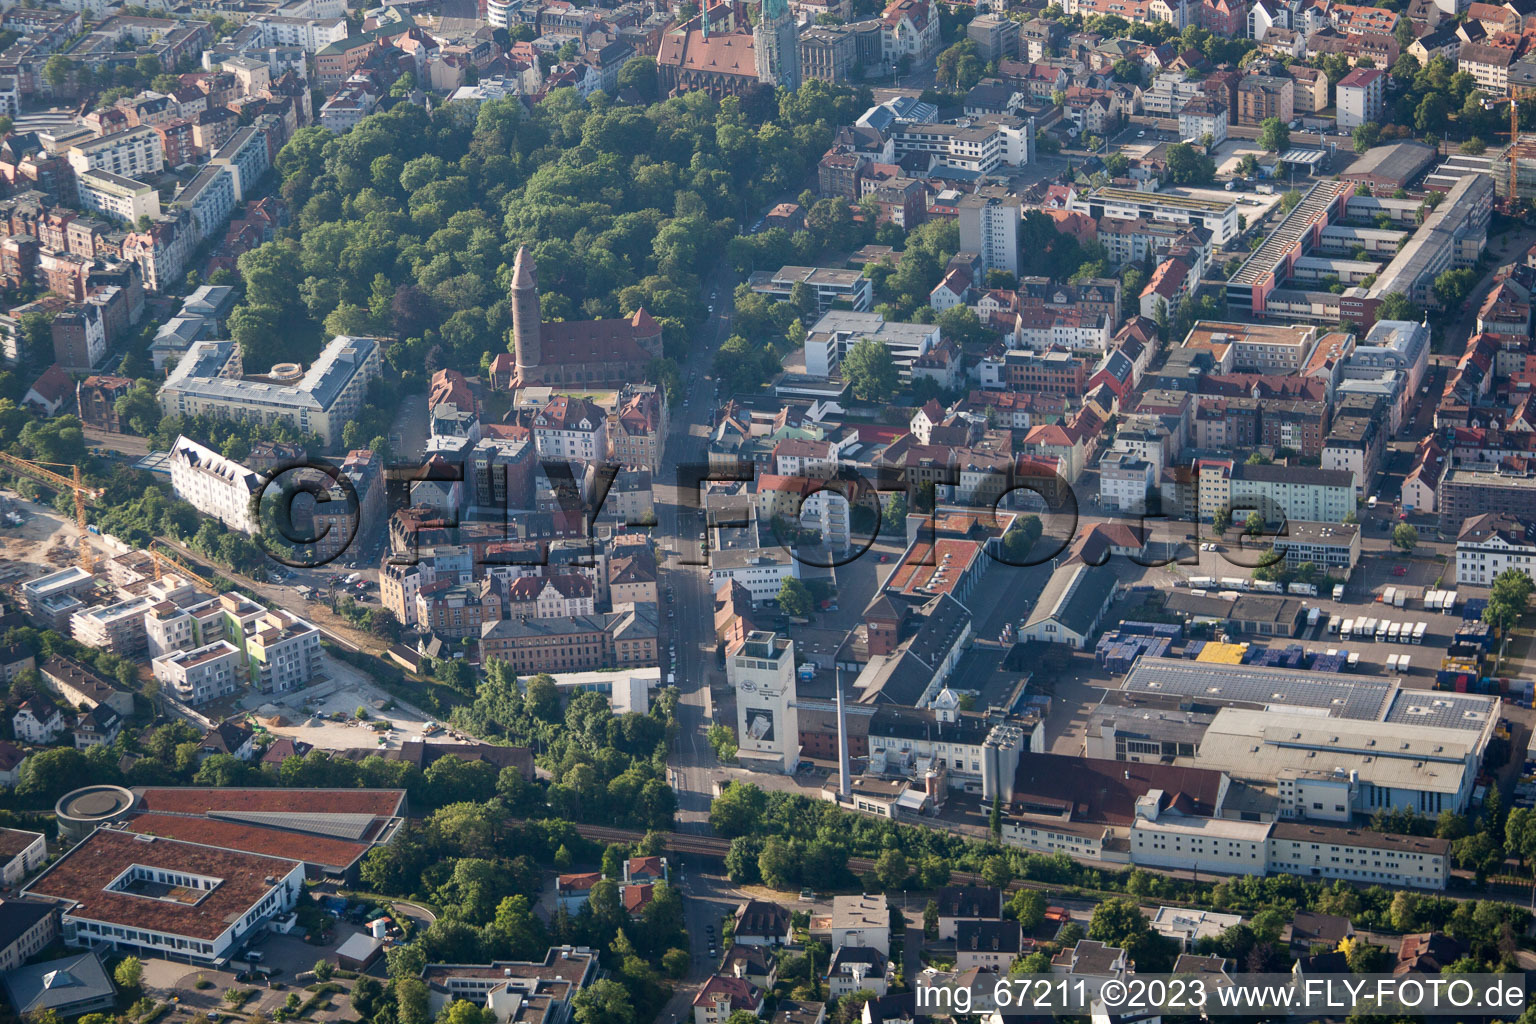 Ulm im Bundesland Baden-Württemberg, Deutschland aus der Drohnenperspektive